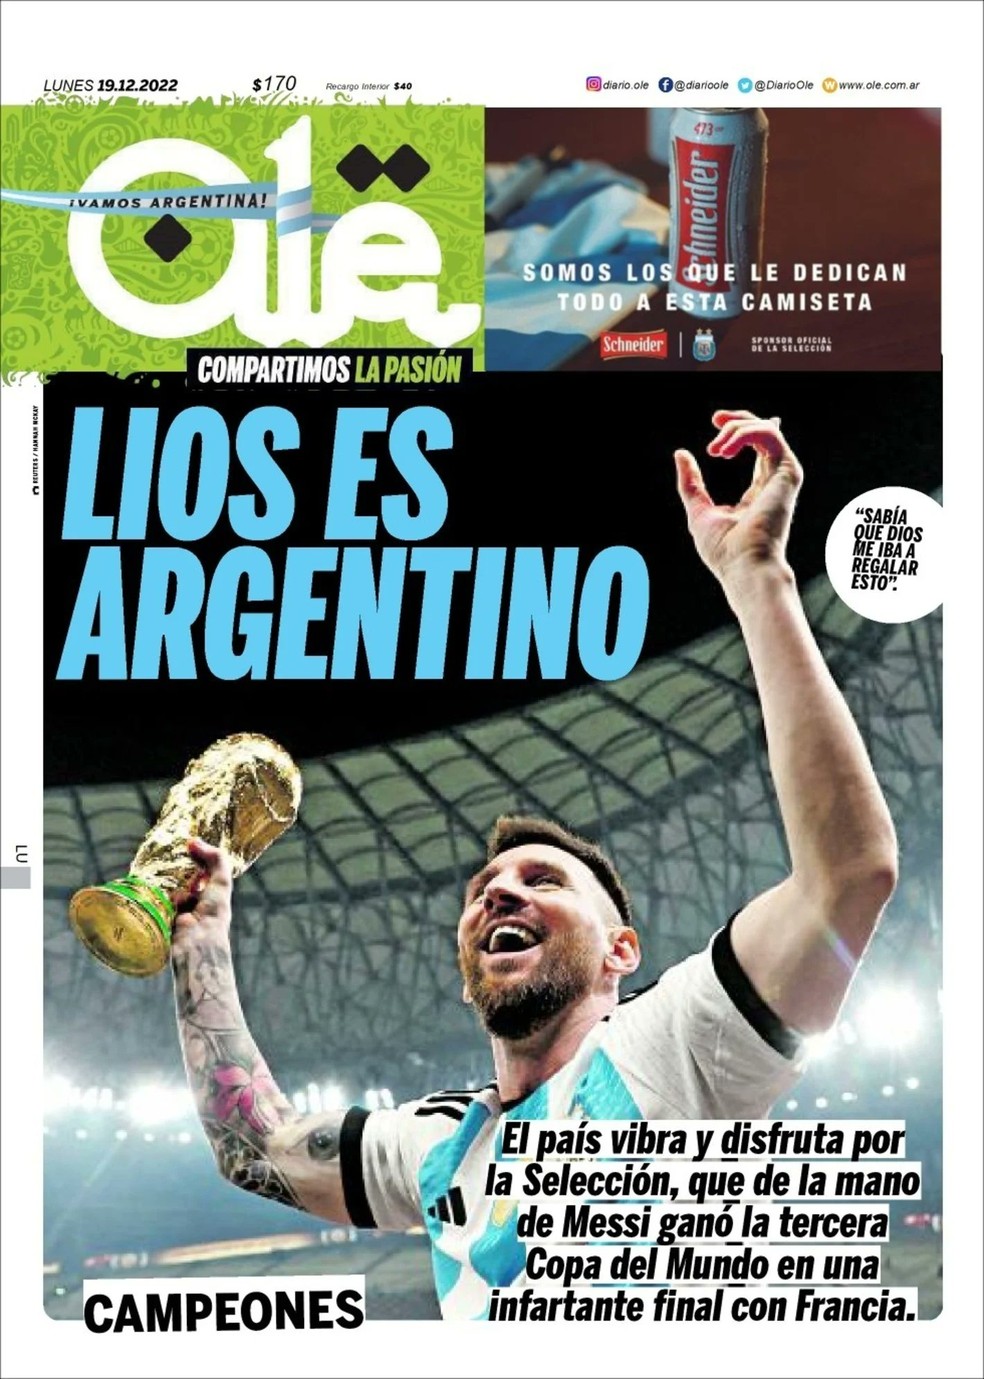 Messi, o maior jogador desde Pelé, mira 2026 Bi com a Argentina